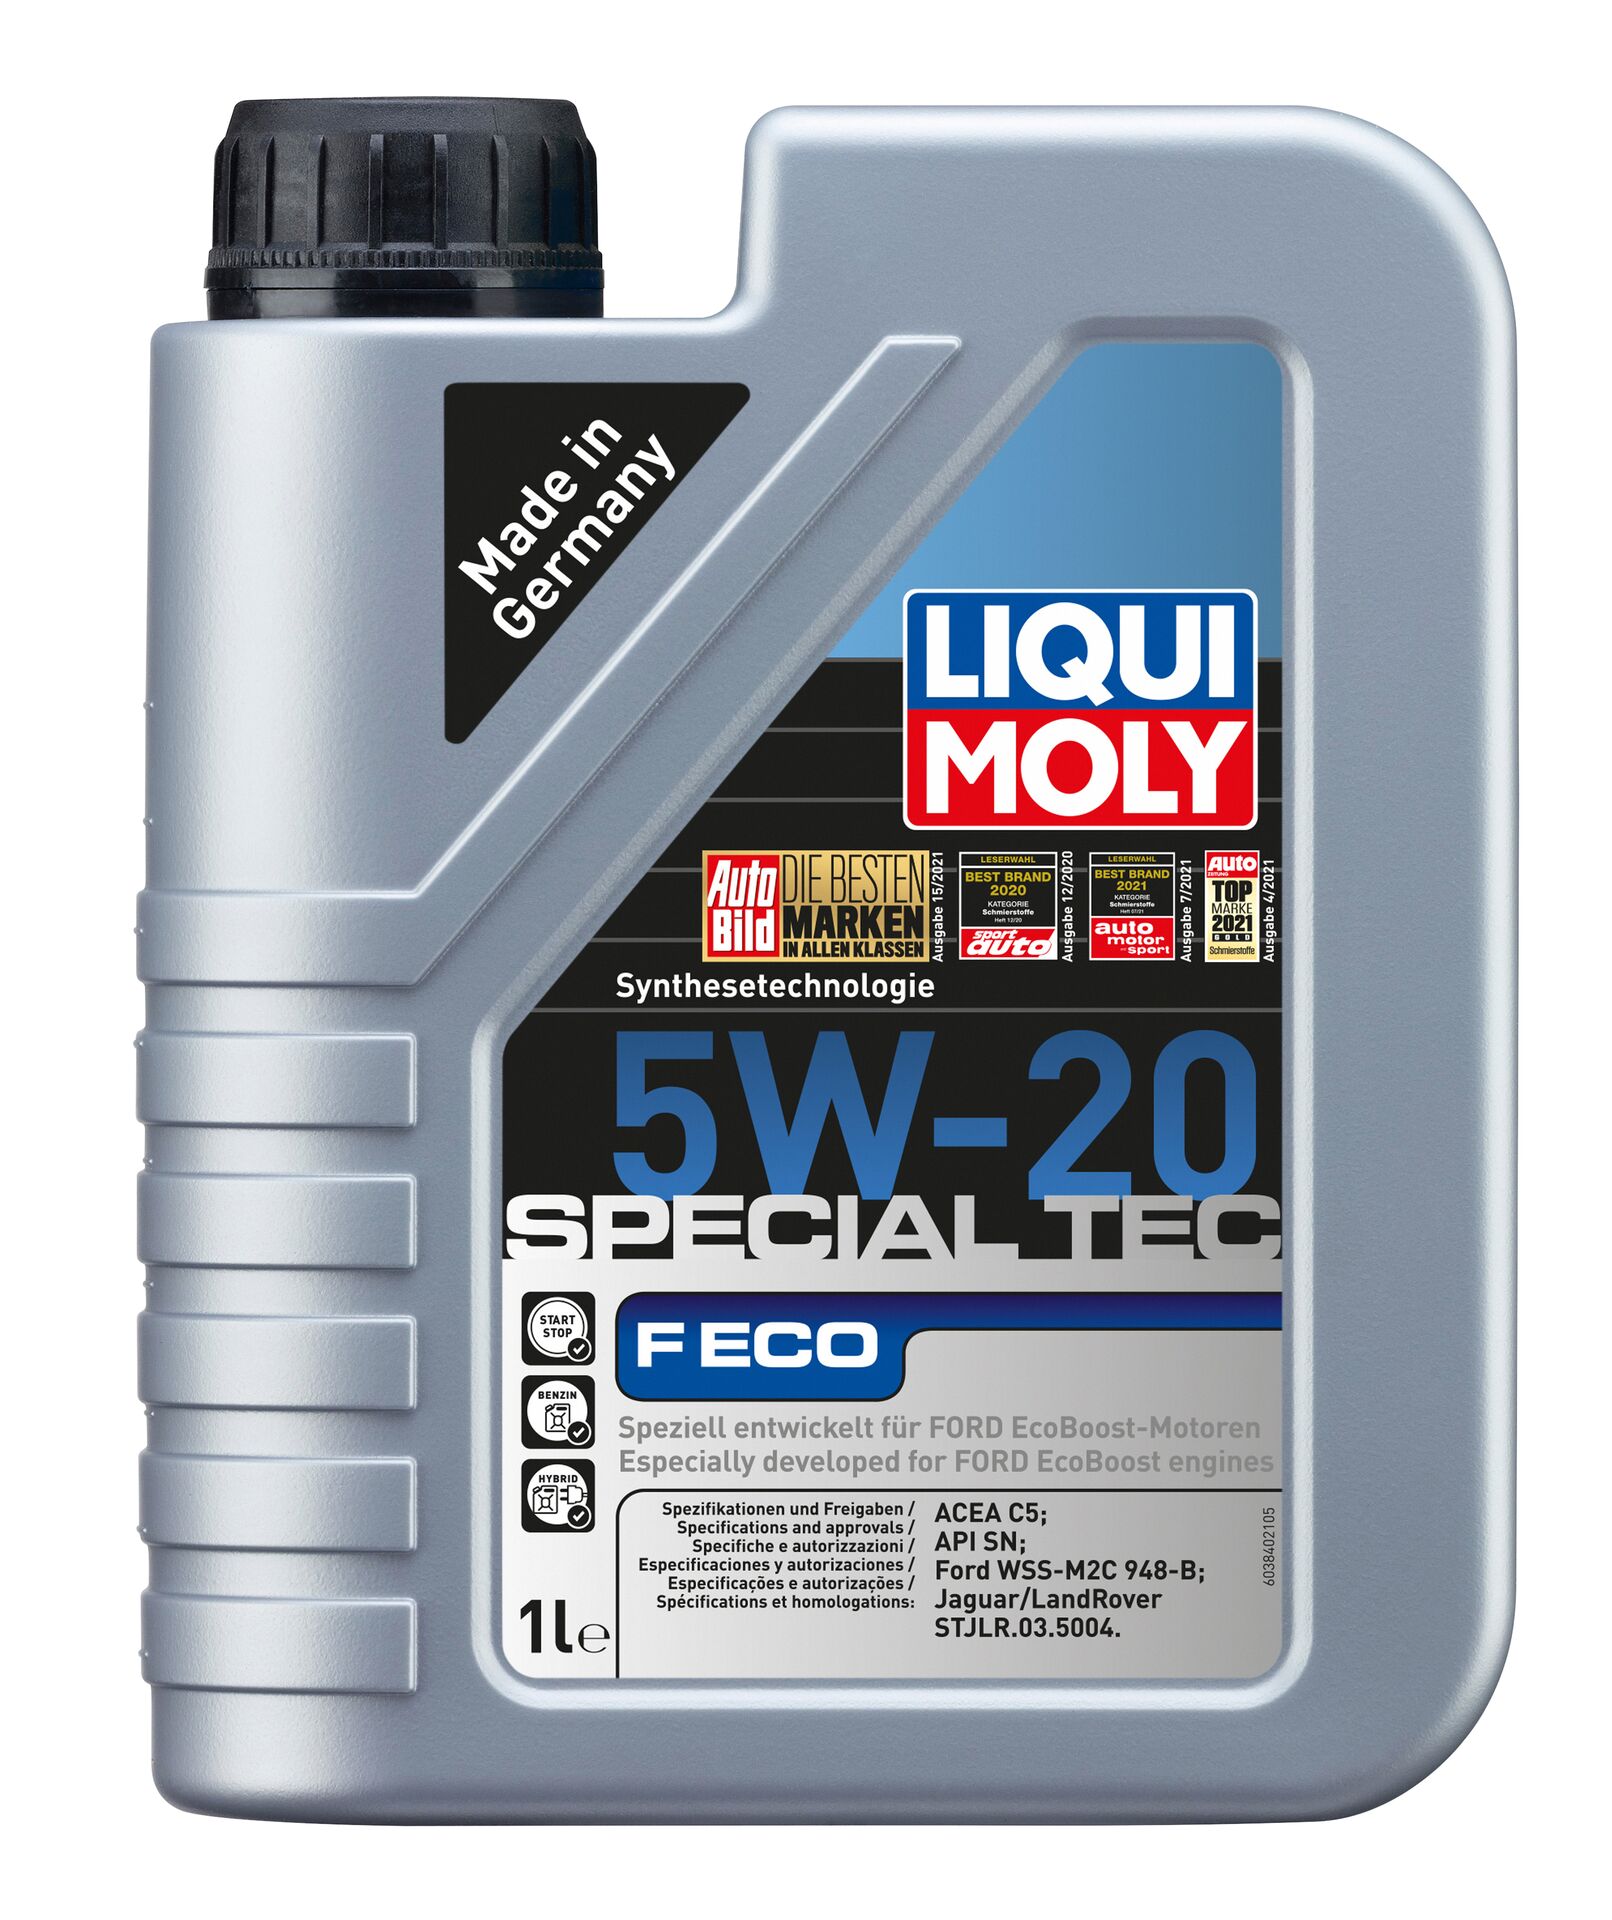 LIQUI-MOLY Motorenöl Special Tec F ECO 5W-20 1 l 